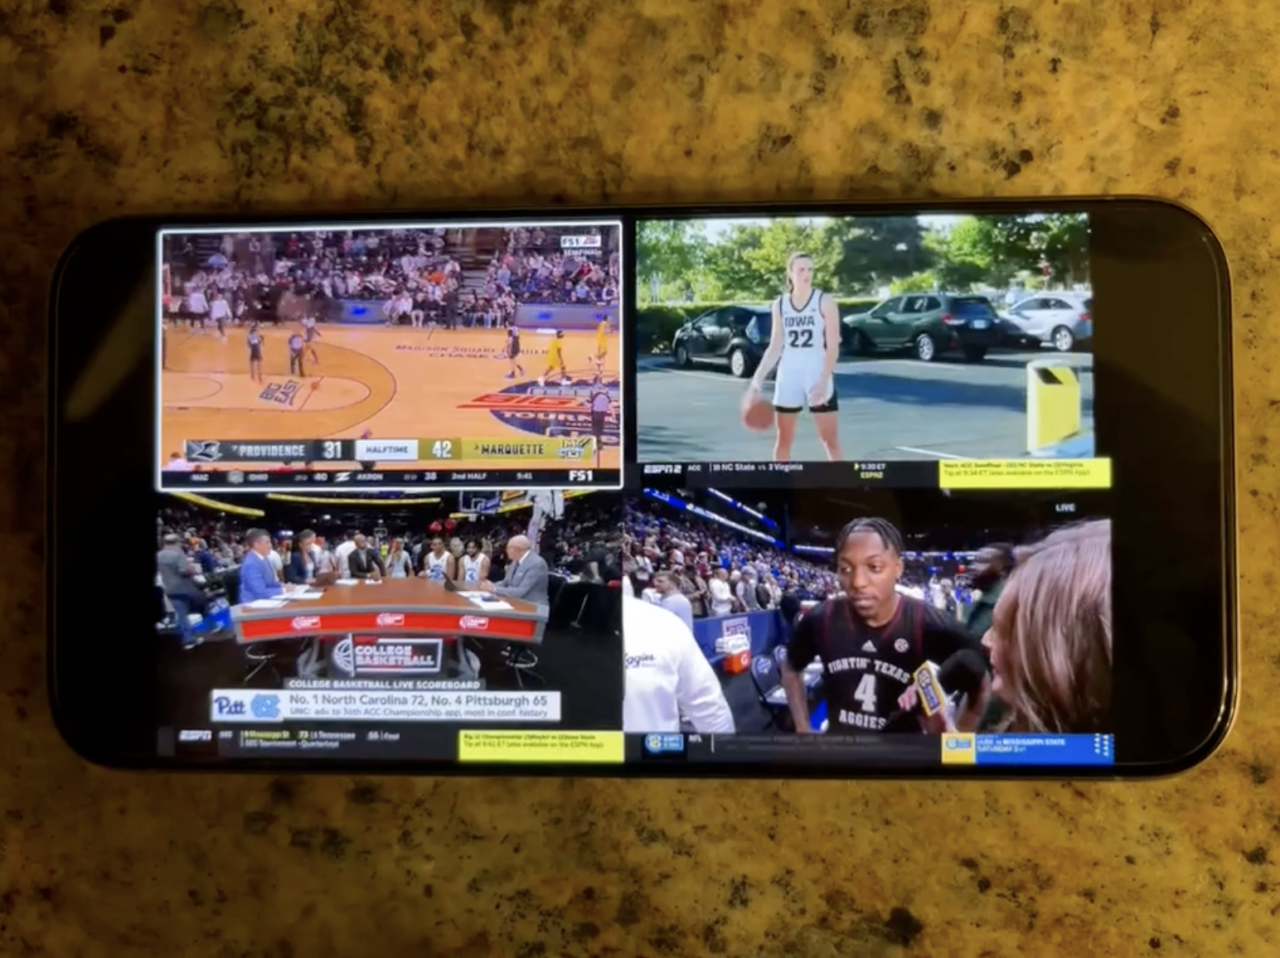 Smartfon wyświetlający podzielony ekran z czterema różnymi transmisjami sportowymi, w tym koszykówkę i wywiad z koszykarzem.